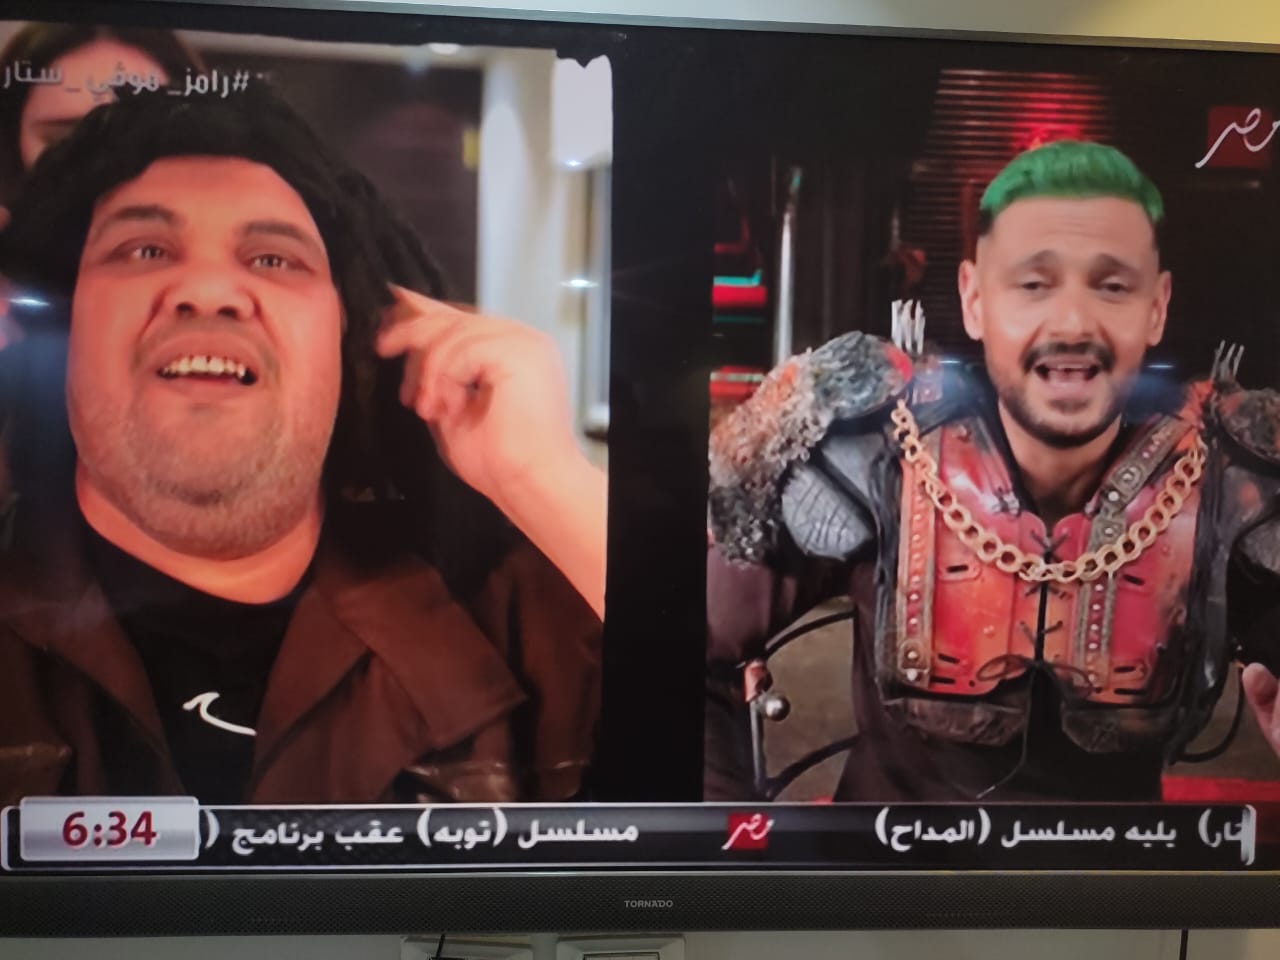 فخاد الضحك.. ملخص إيفيهات رامز جلال في حلقة أحمد فتحي في “رامز موفي ستار” 3